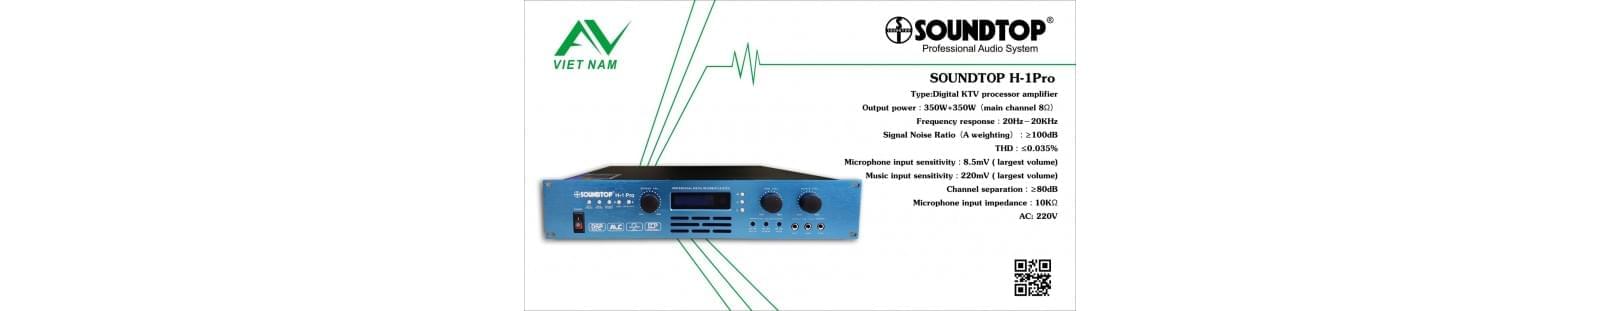 SoundTop H-1 Pro